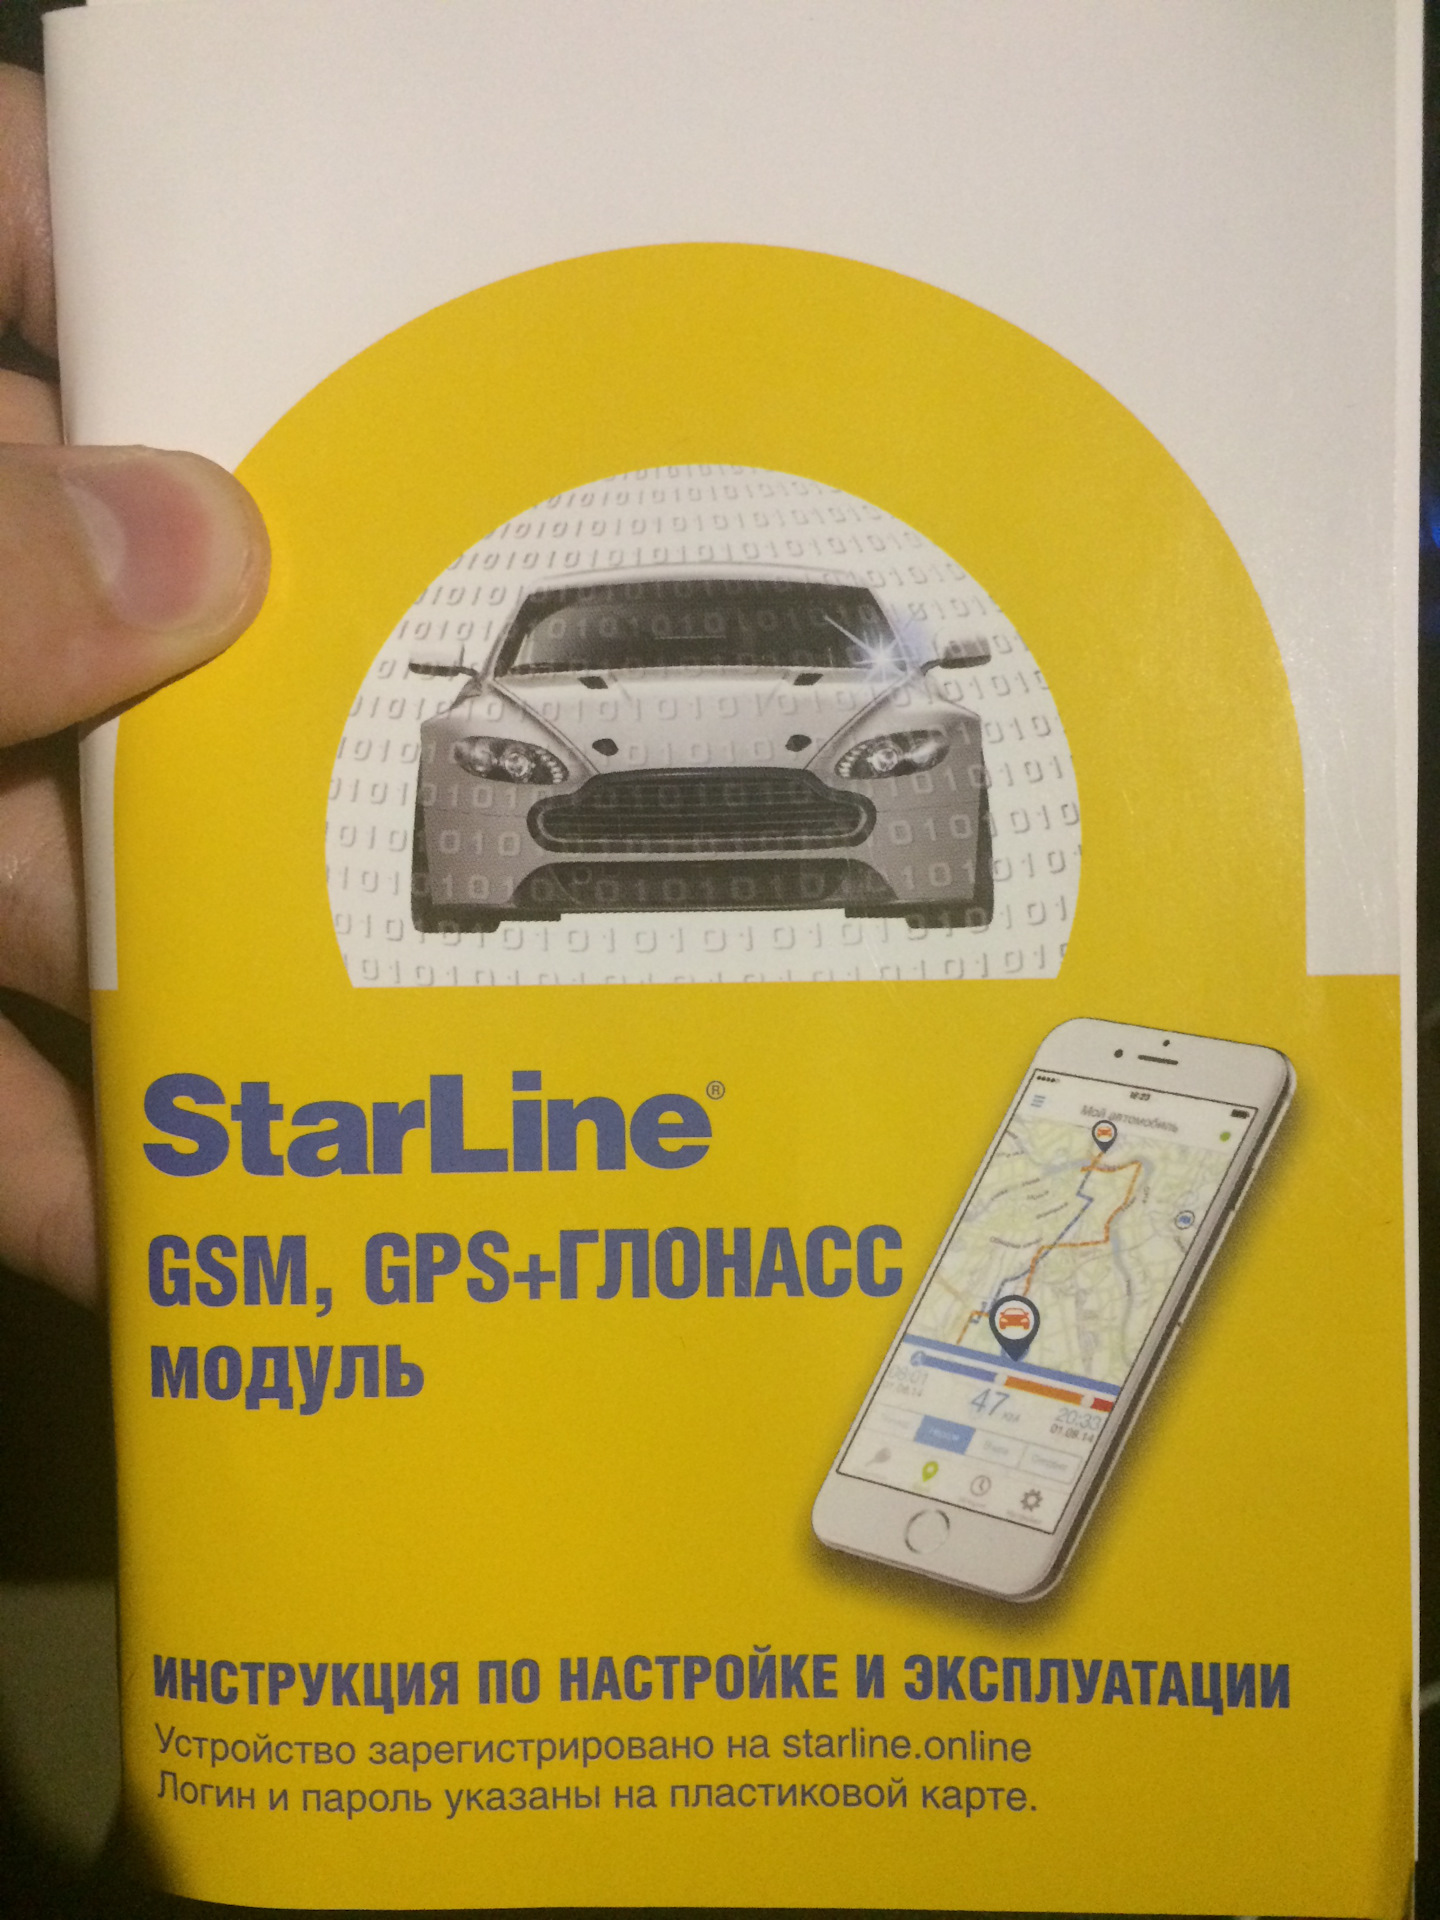 Starline gsm цена. Авто GSM модуль ГЛОНАСС. Модуль Star line мастер 6 GPS+ГЛОНАСС STARLINE 4001715. Е93старлайн отзывы. Зарегистрировать старлайн.